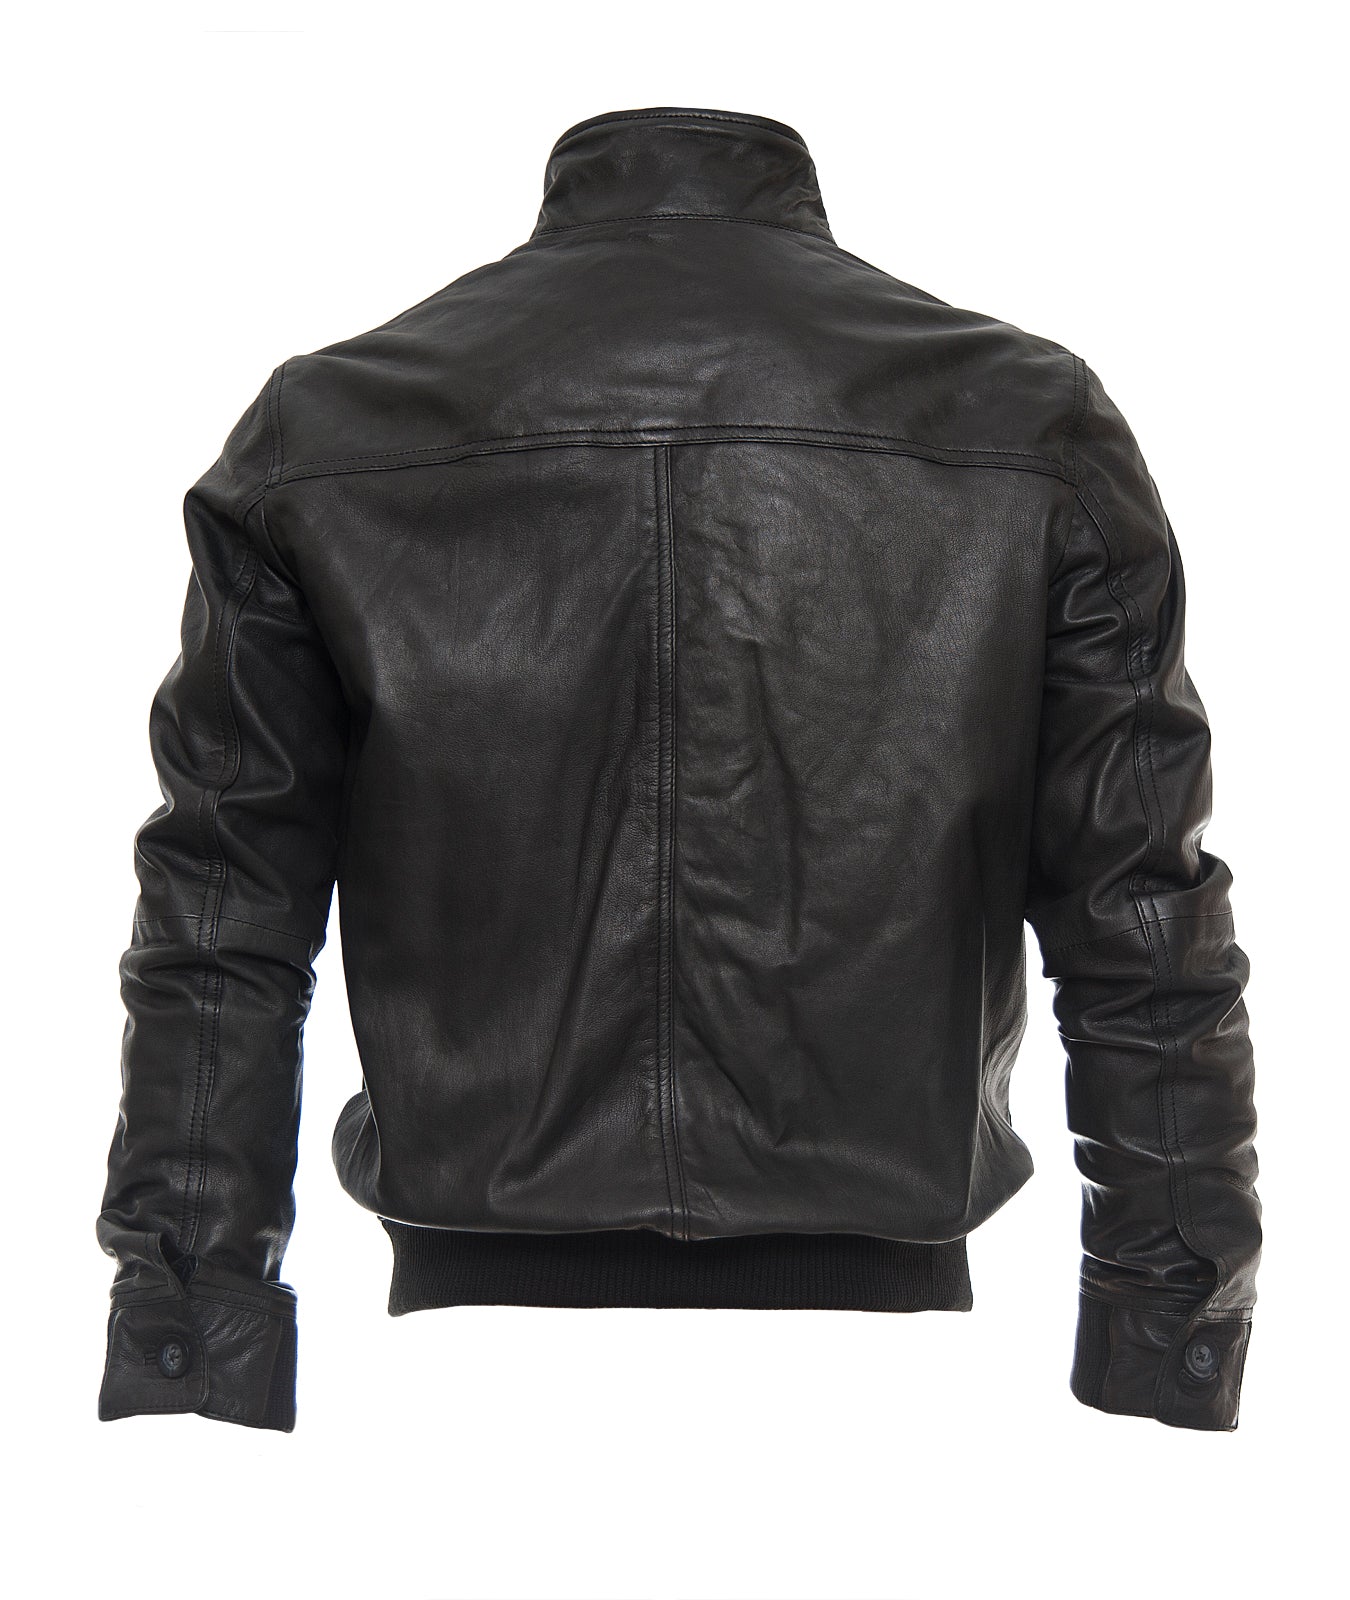 men leather jacket megand leather jackets black leatehr jacket men classic look jacket for men biker leather jacket men